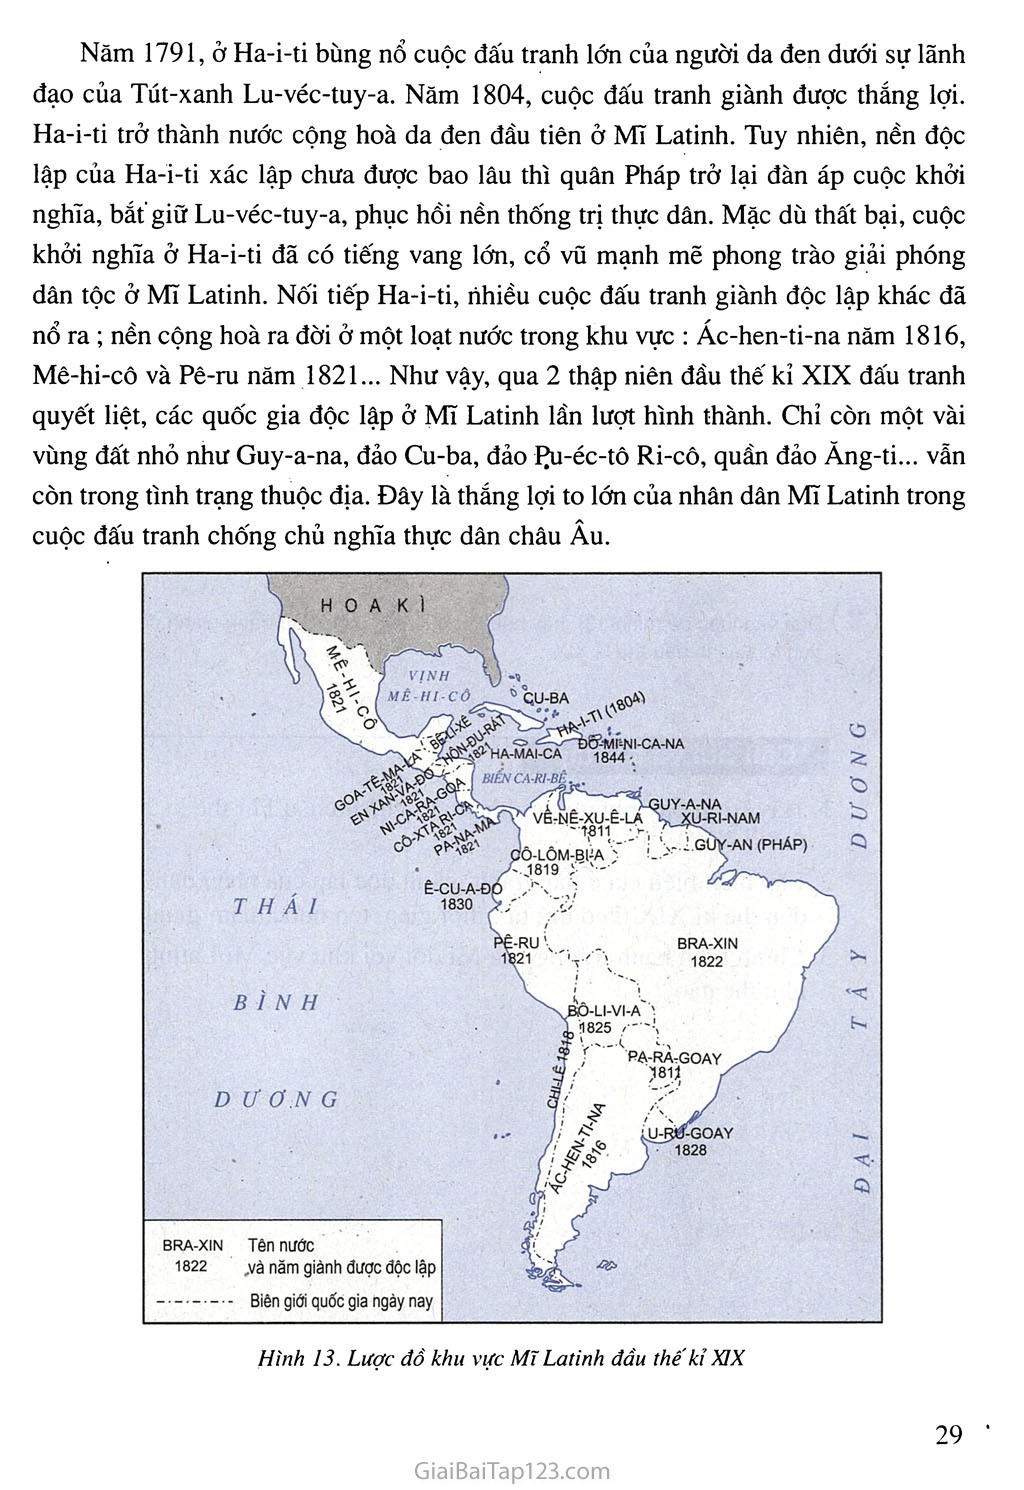 Bài 5. Châu Phi và khu vưc Mĩ Latinh (Thế kỉ XIX - đầu thế kỉ XX) trang 4